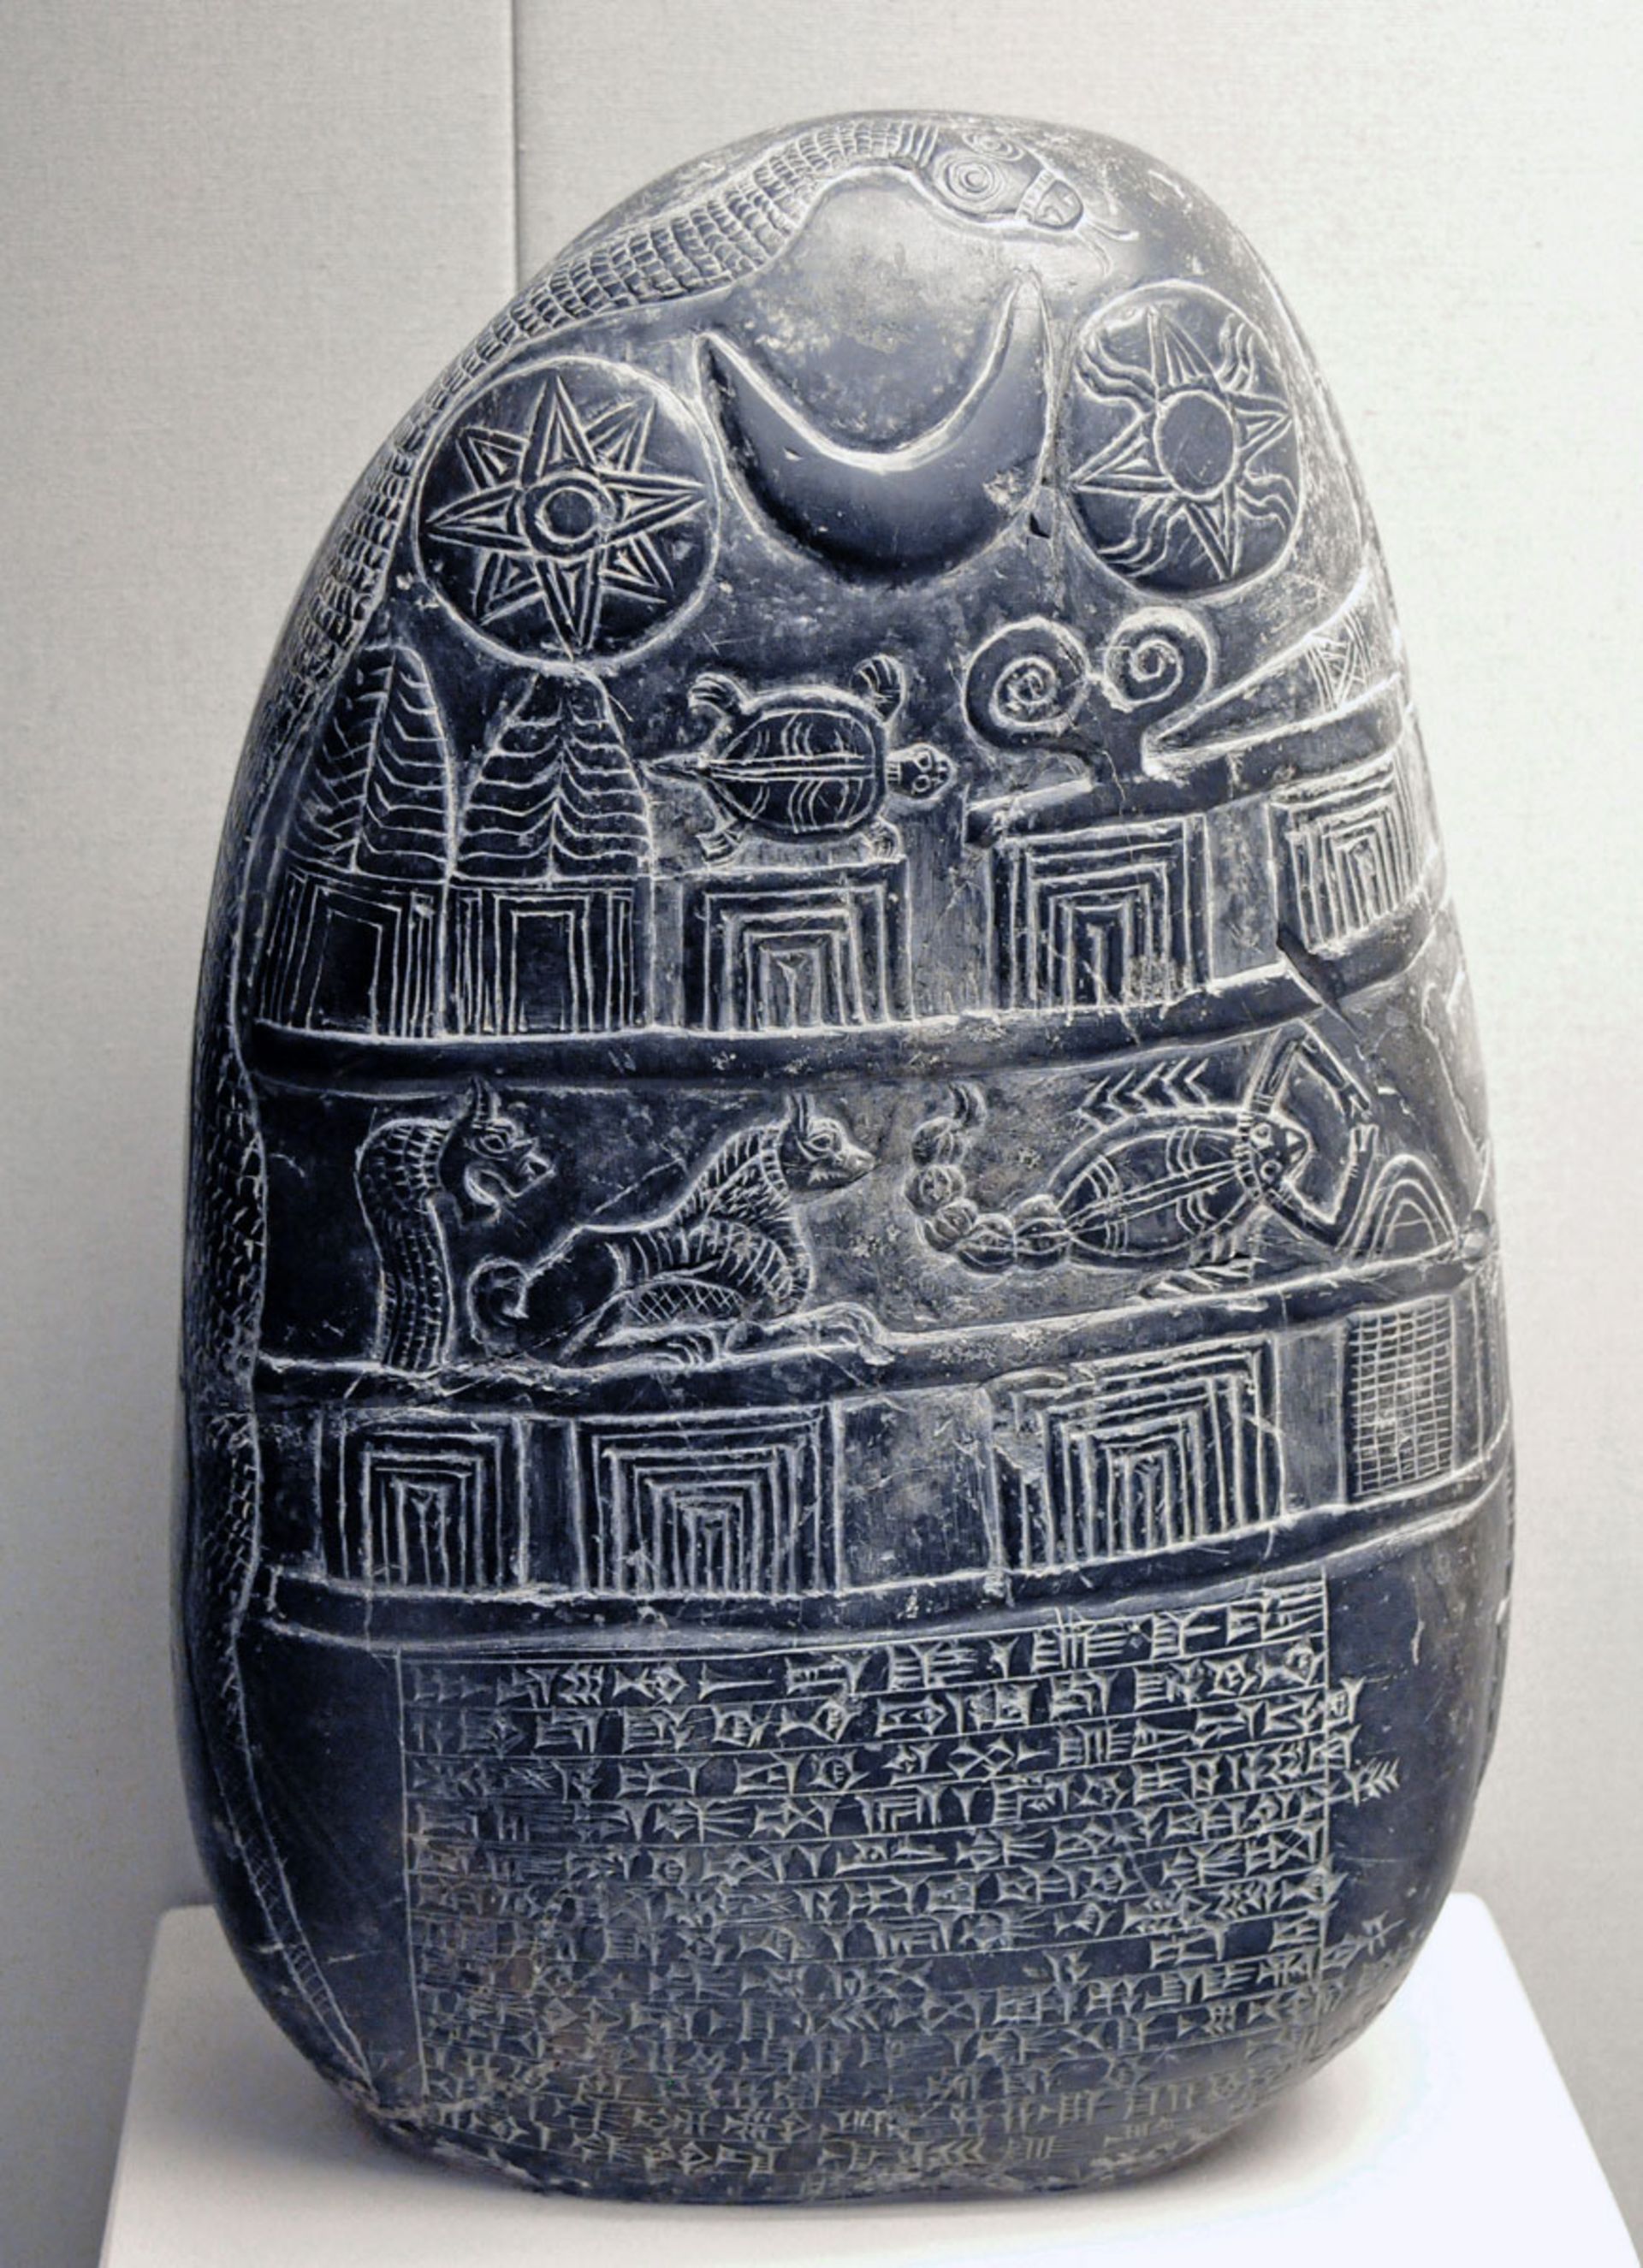 سنگ باستانی با خط میخی و تصاویر موجودات